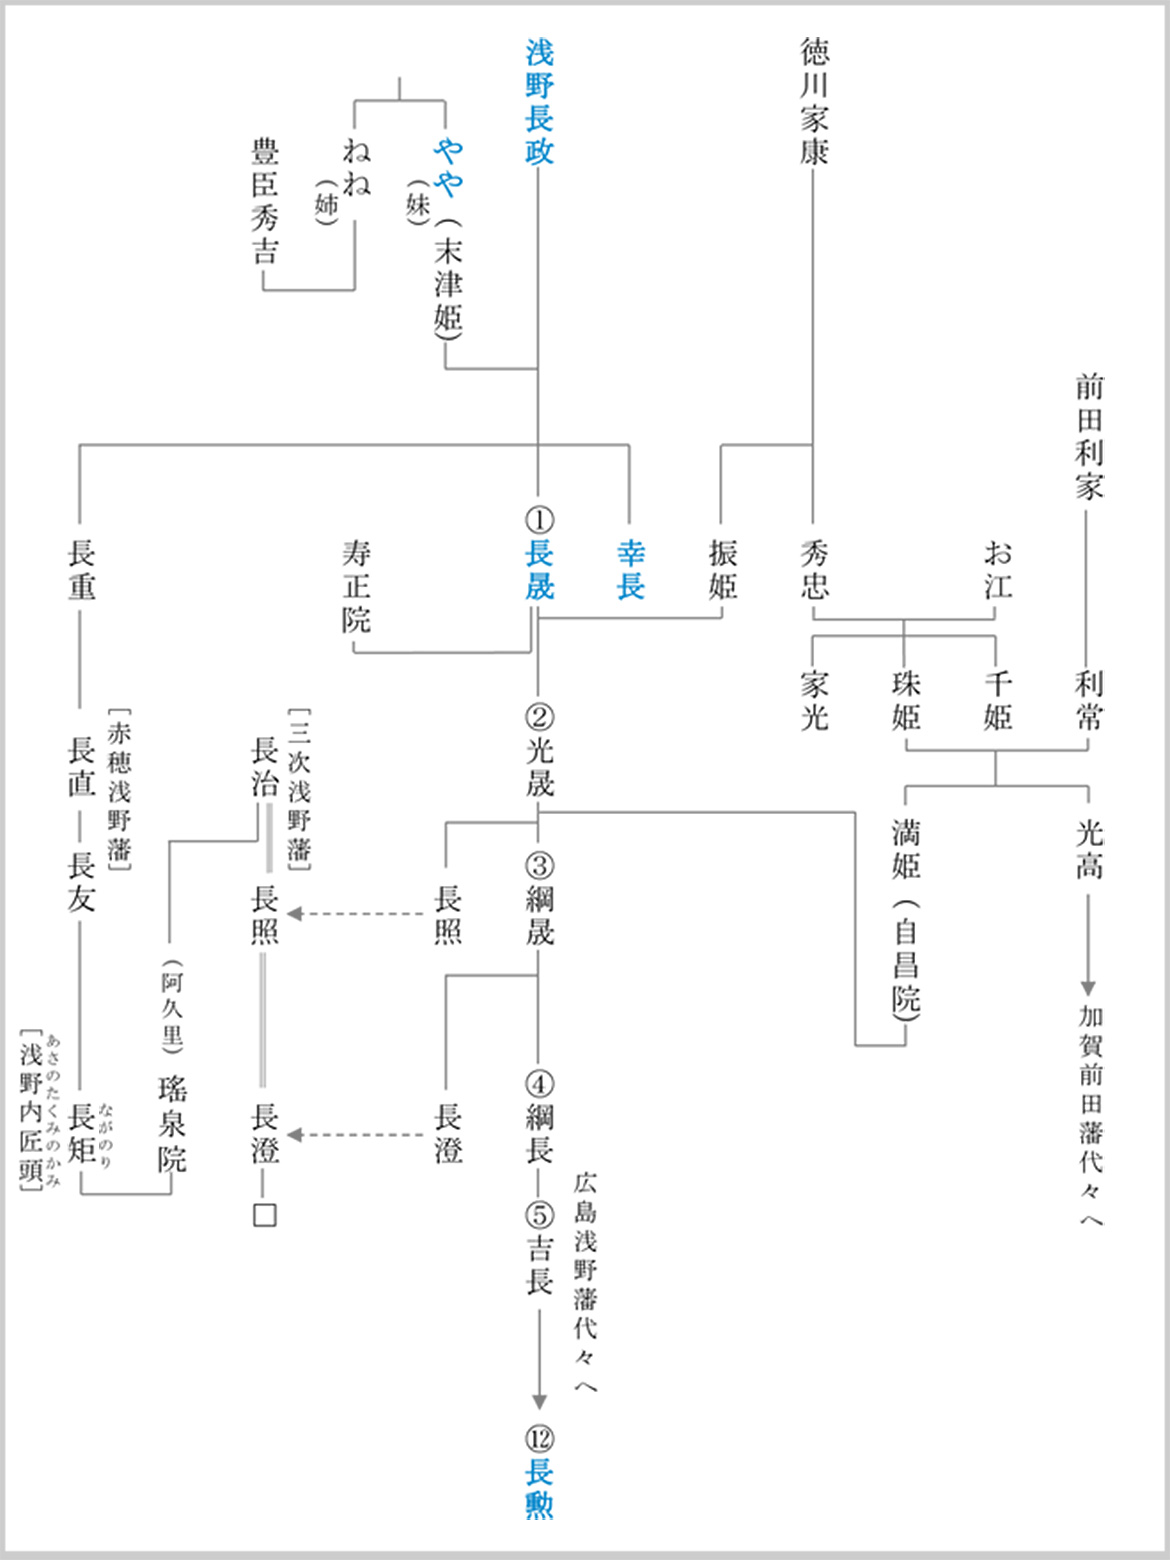 浅野家関連系図